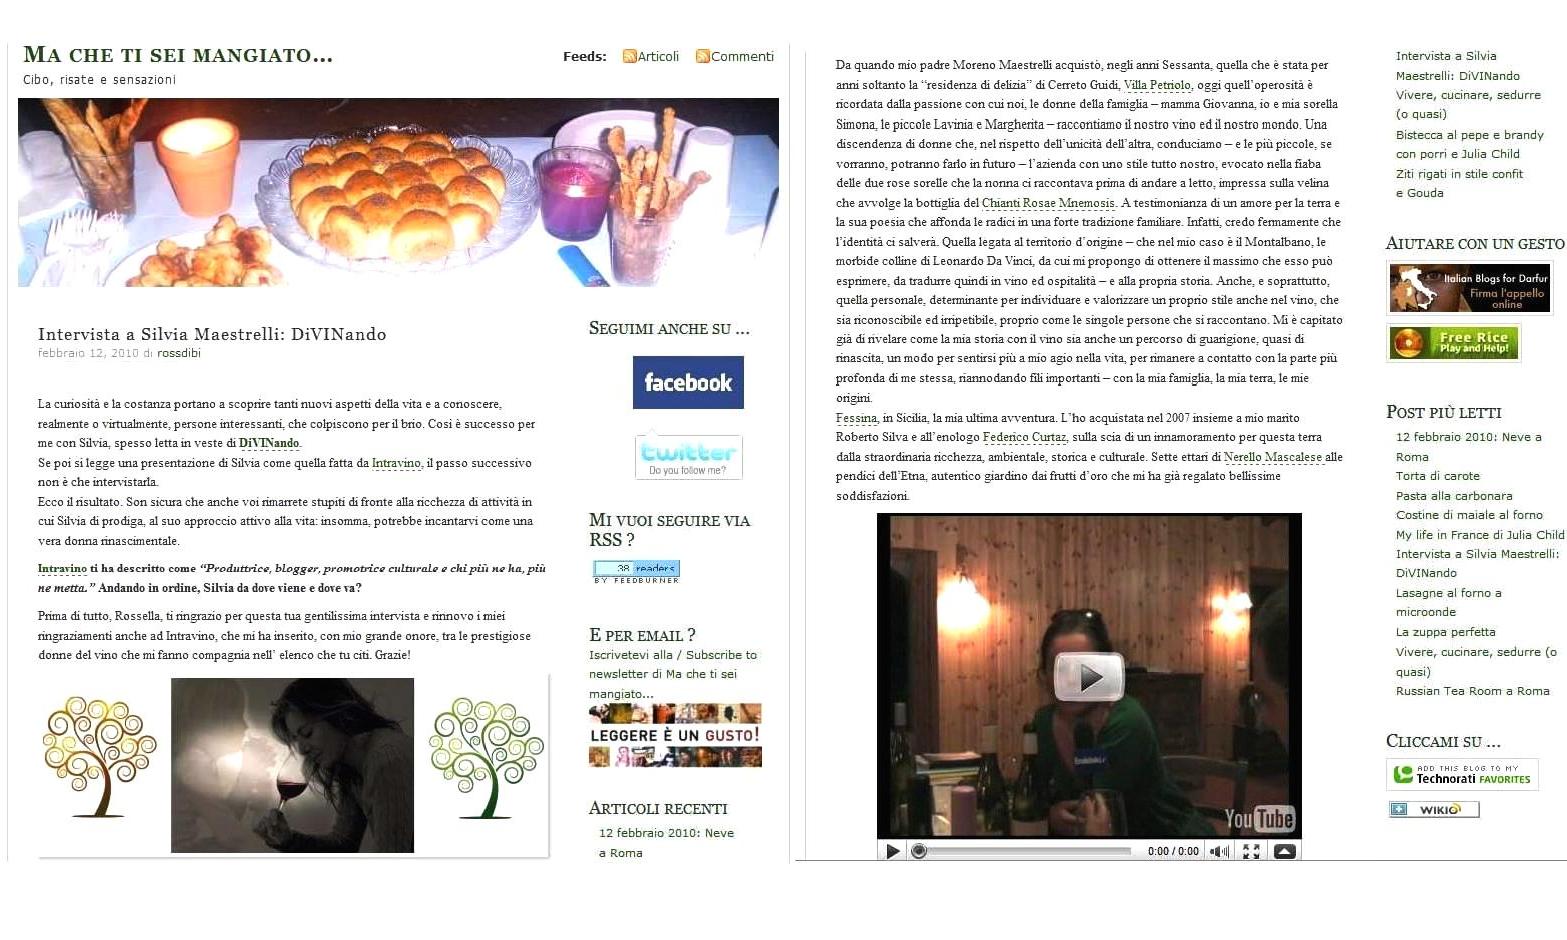 [Intervista+Silvia+Maestrelli+Blog+Mache+ti+sei+mangiato+febbraio+2010.jpg]